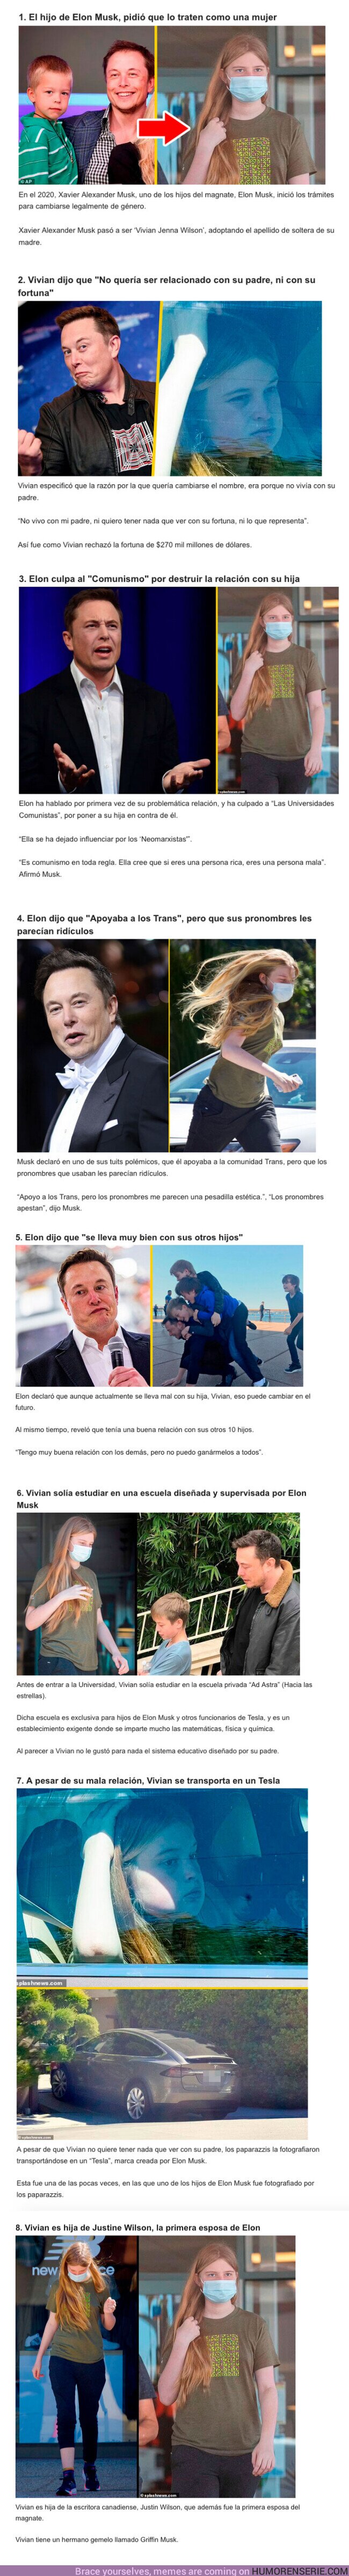 110163 - GALERÍA: 8 Detalles sobre el pleito que tiene Elon Musk y su hija que se declaró “TRANS”